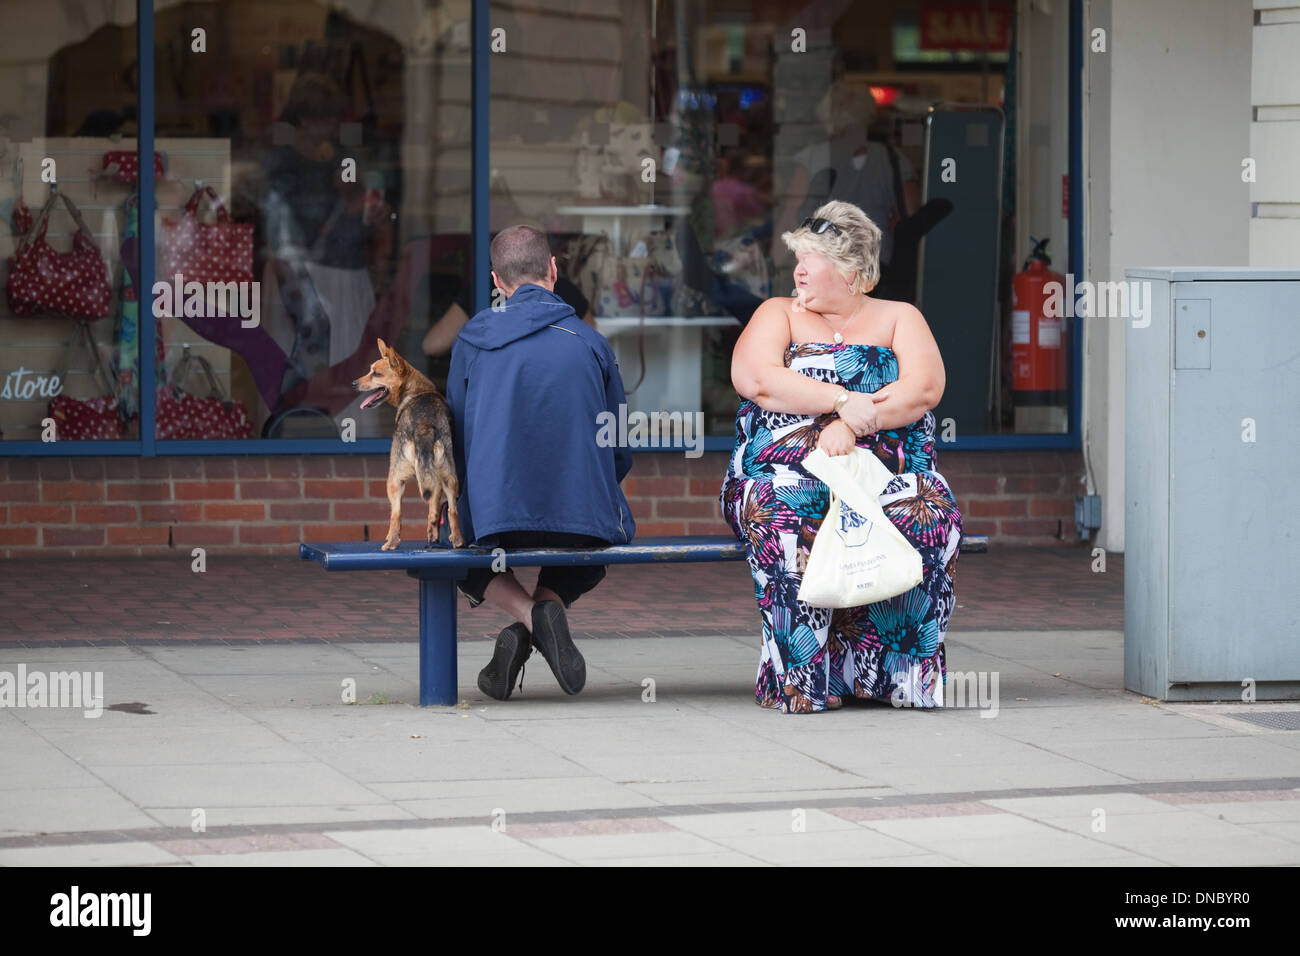 Obesità, isolamento, emarginati, di solitudine. Cane. Seduta urbana banco, strada dello shopping nel Regno Unito. Foto Stock